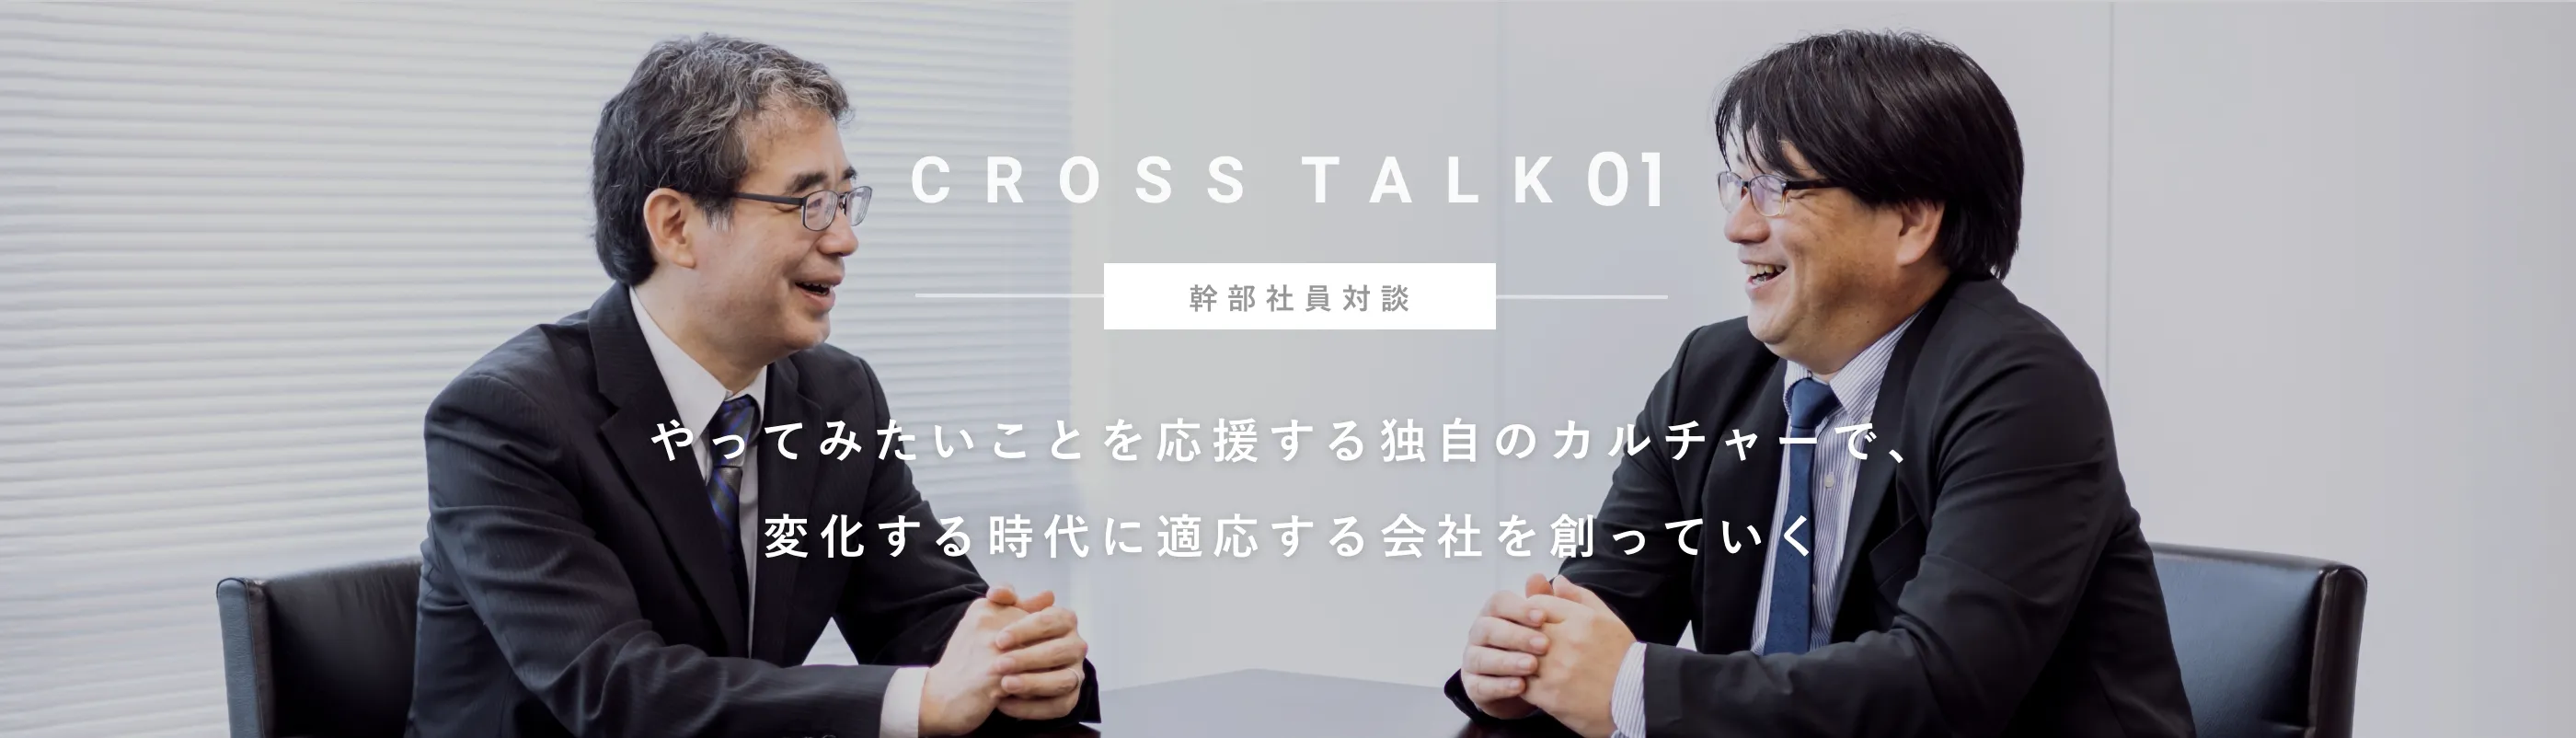 CROSS TALK 01 幹部社員対談 やってみたいことを応援する独自のカルチャーで、	変化する時代に適応する会社を創っていく